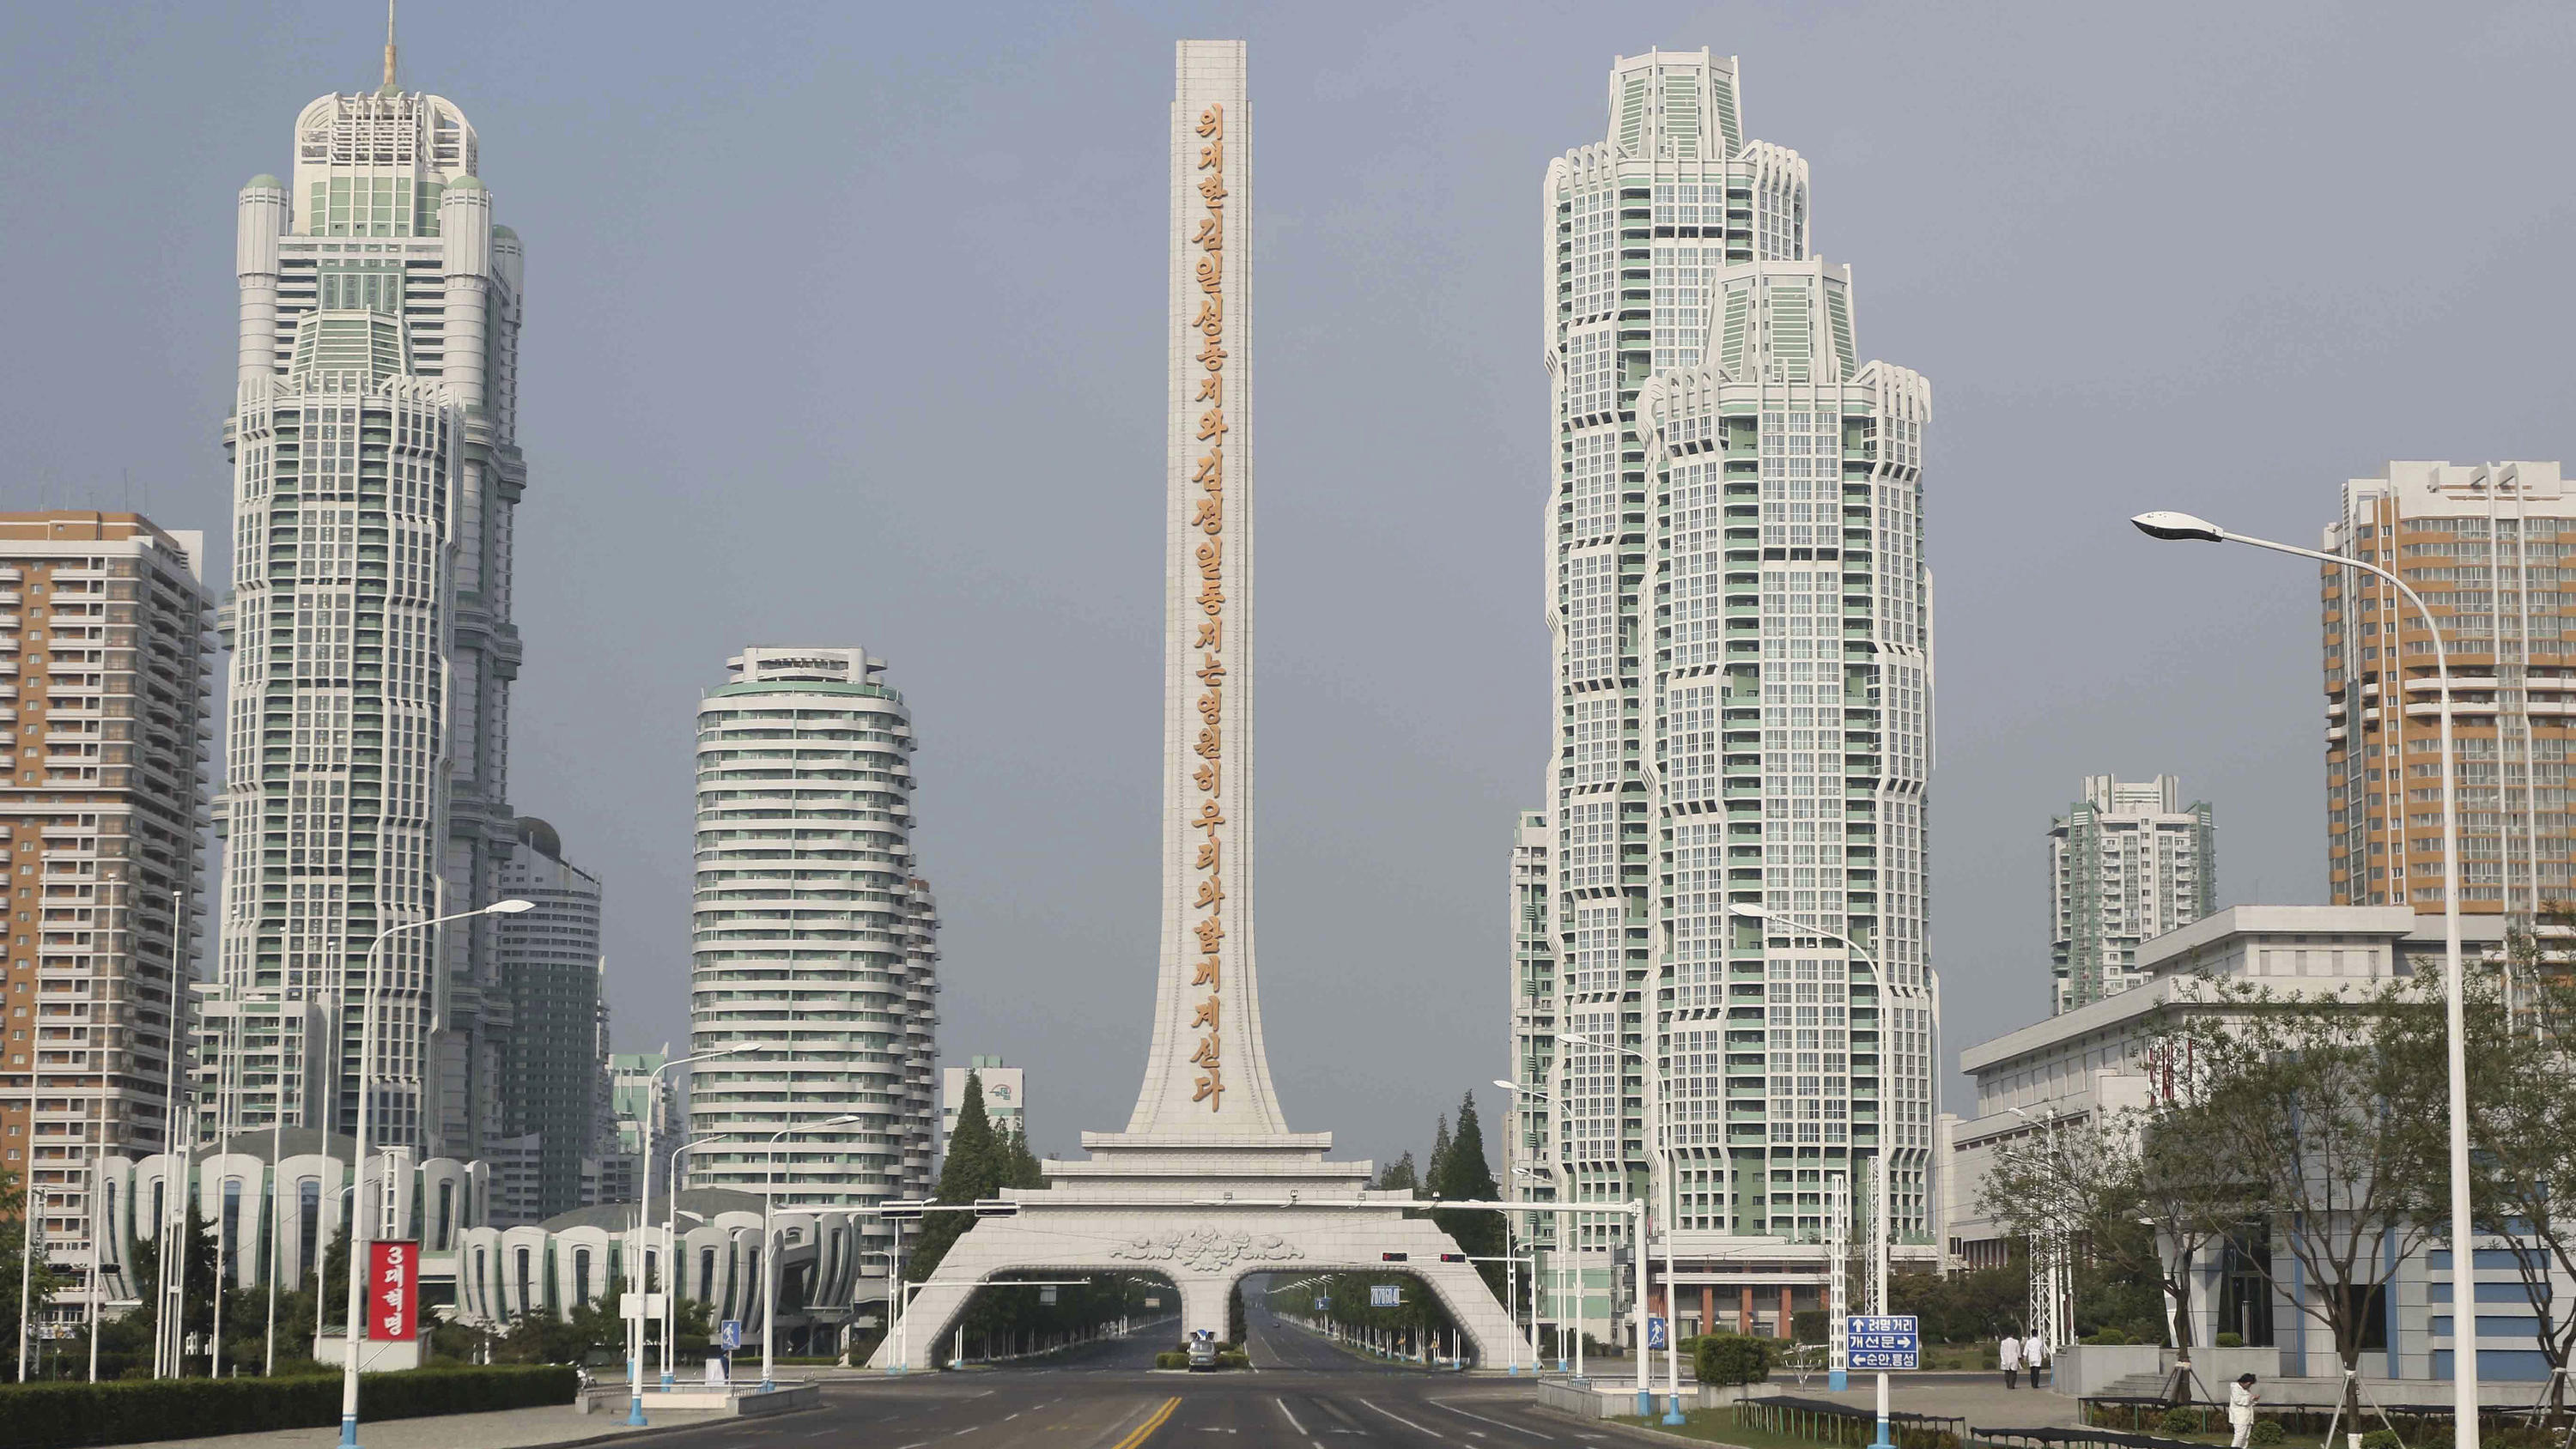 Nordkorea, Pjöngjang: Die Ryomyong-Straße ist leer.